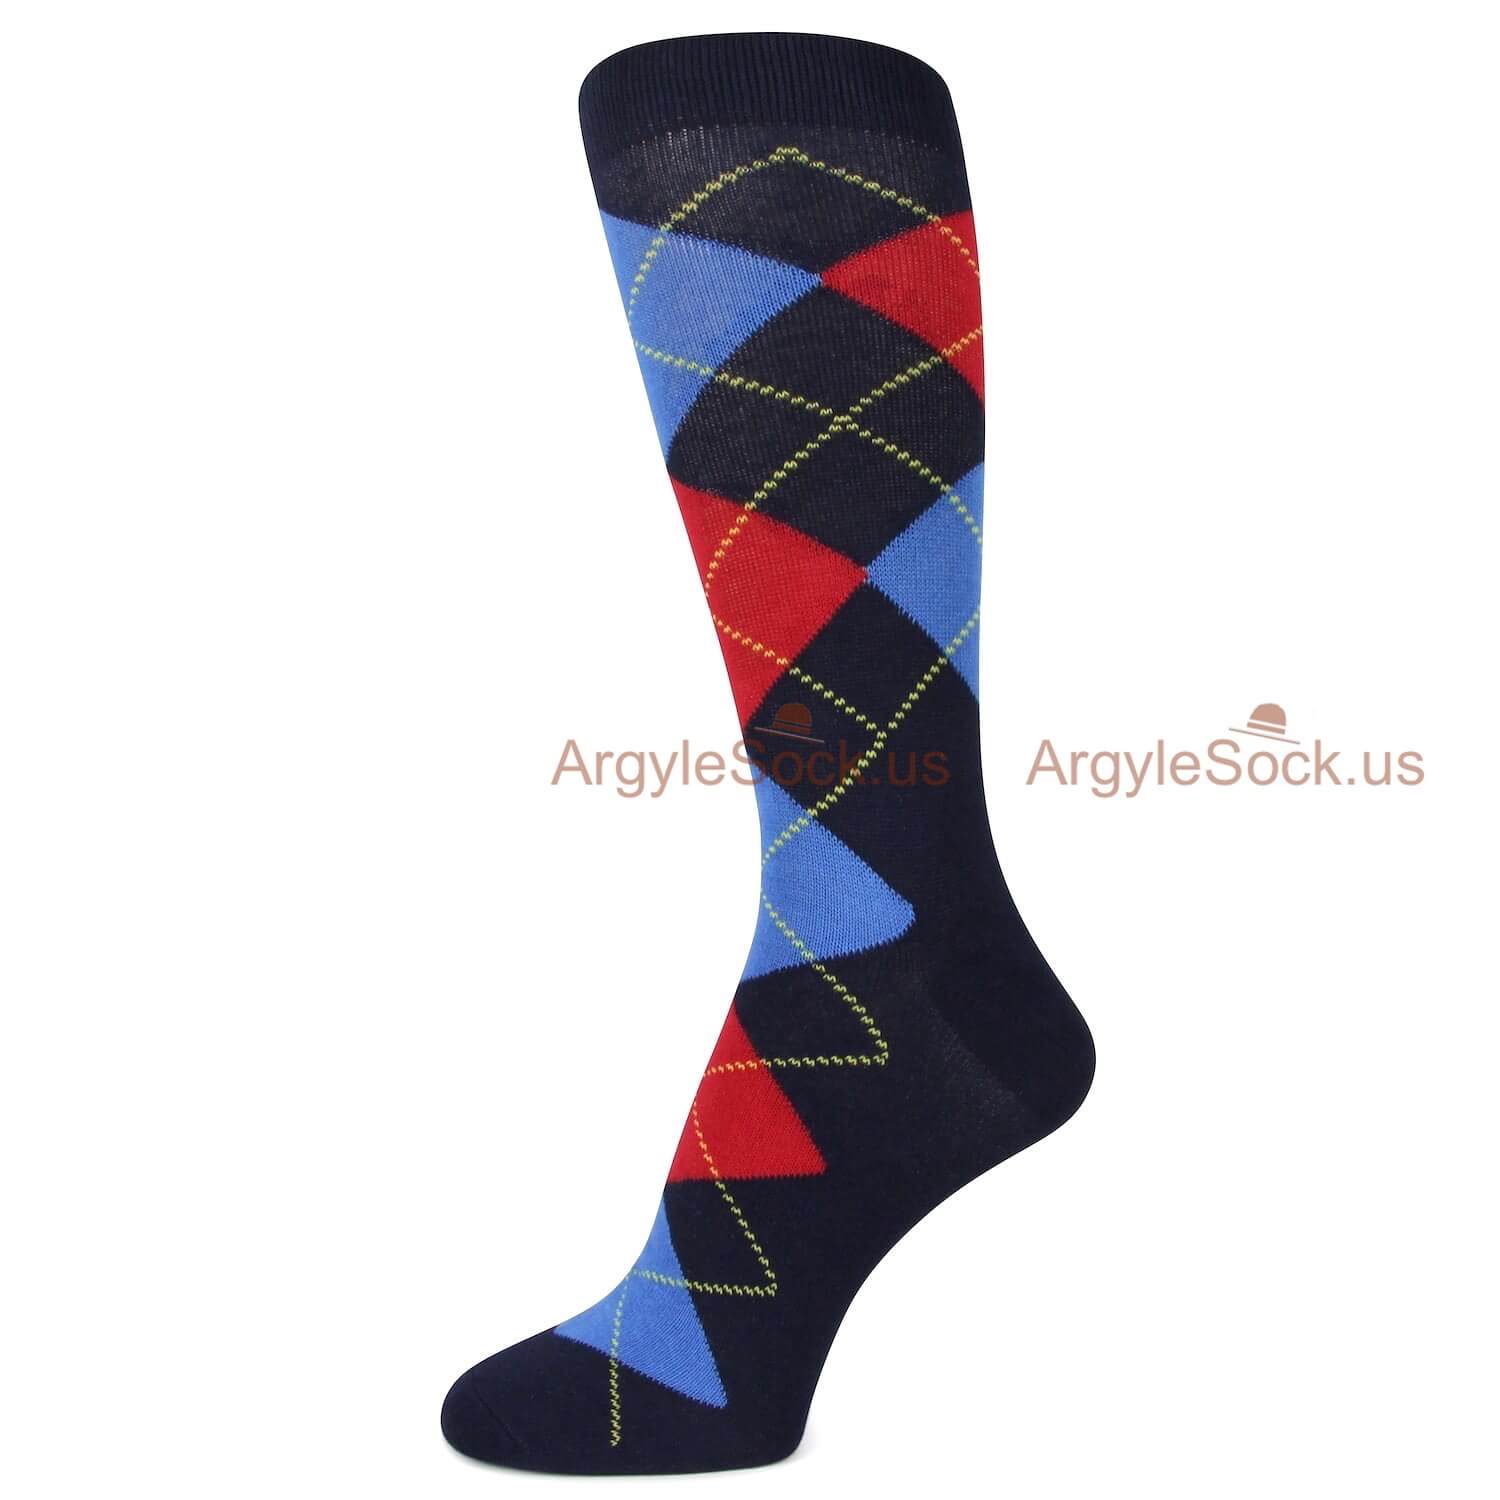 Black Red Blue Argyle socks for men